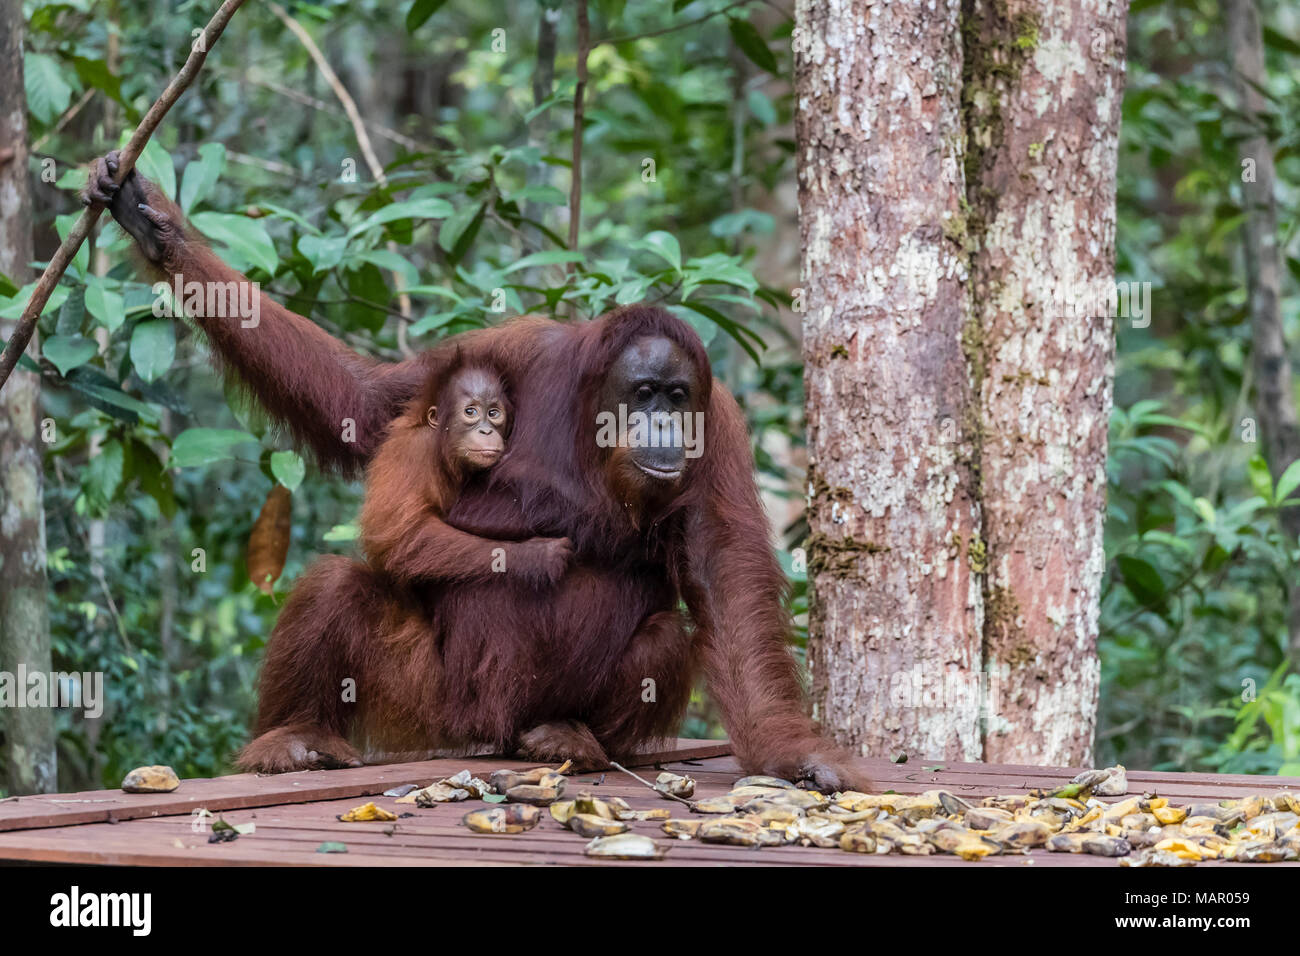 La mère et le bébé orang-outans (Pongo pygmaeus), Camp Leakey plate-forme d'alimentation, Bornéo, Indonésie, Asie du Sud, Asie Banque D'Images